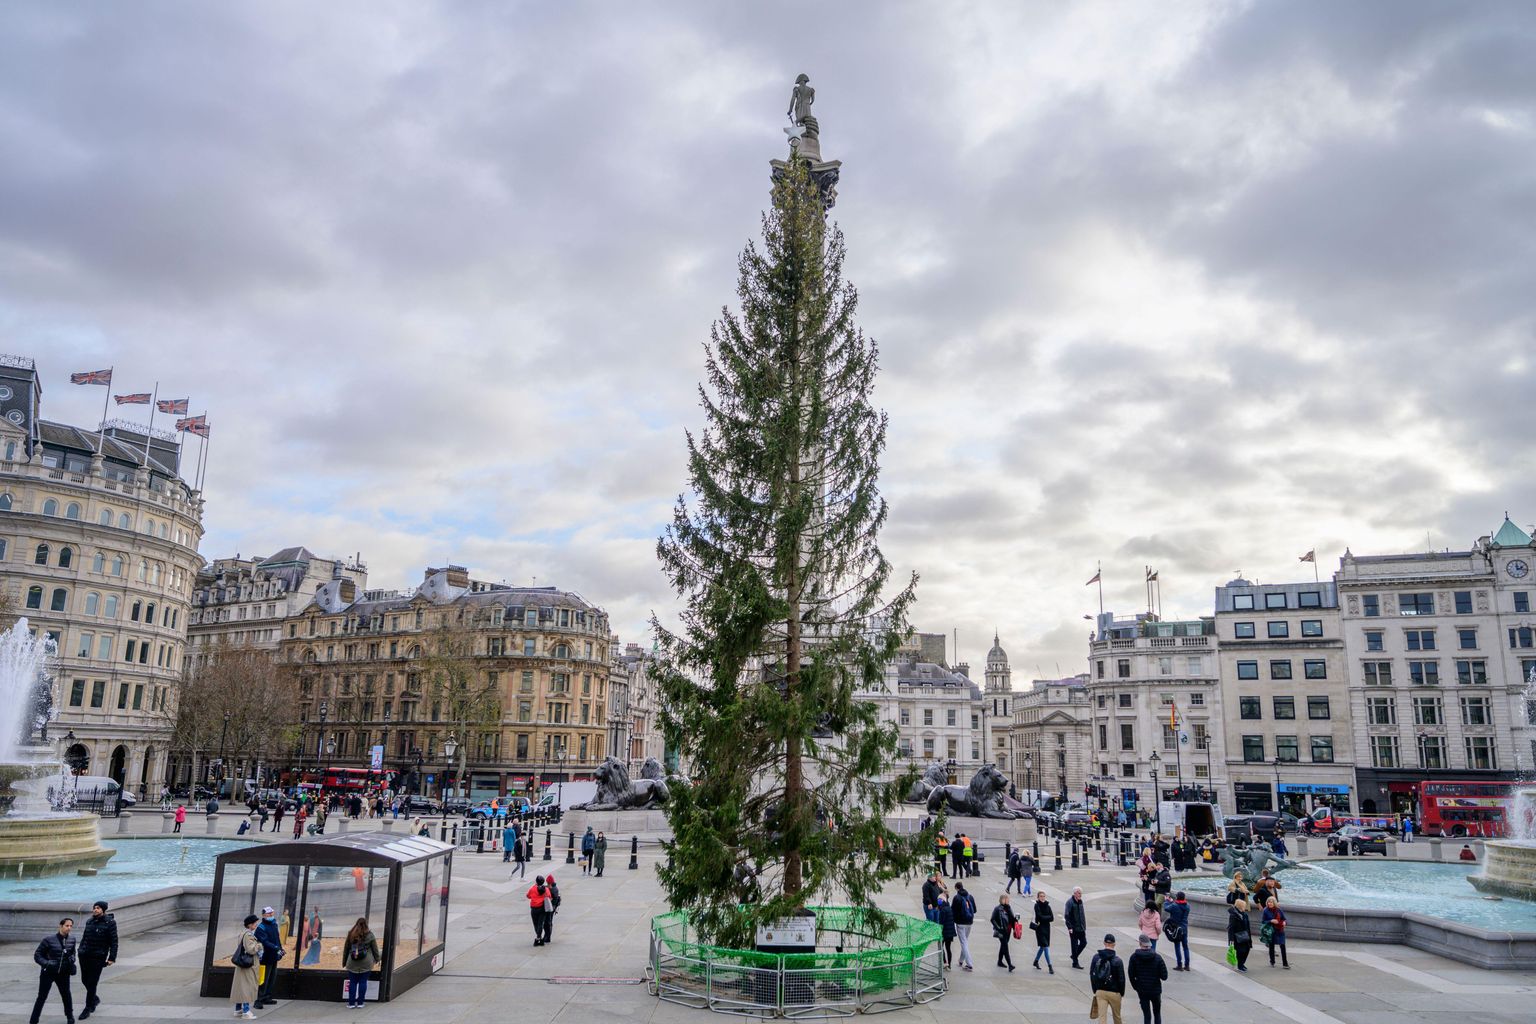 No new Christmas tree for Trafalgar Square News Hits Radio (London)